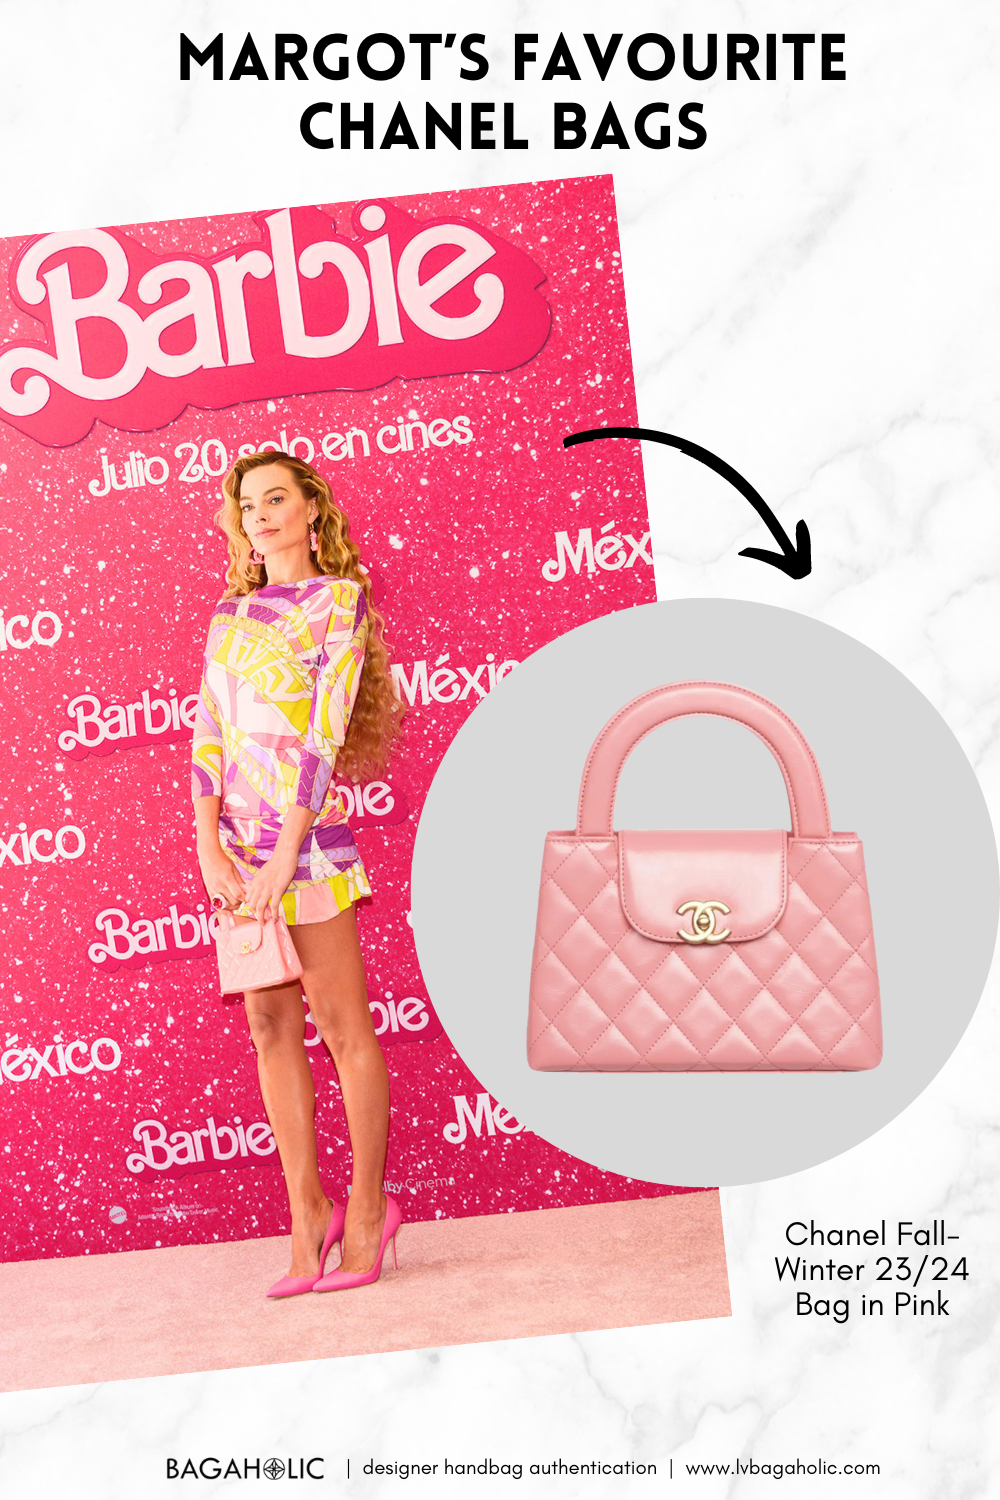 100 celebrità e le loro borse Chanel preferite Beyonce Chanel Boy Bag Celebs Part1 Part1 Margot Robbie Margot Borse Chanel preferite